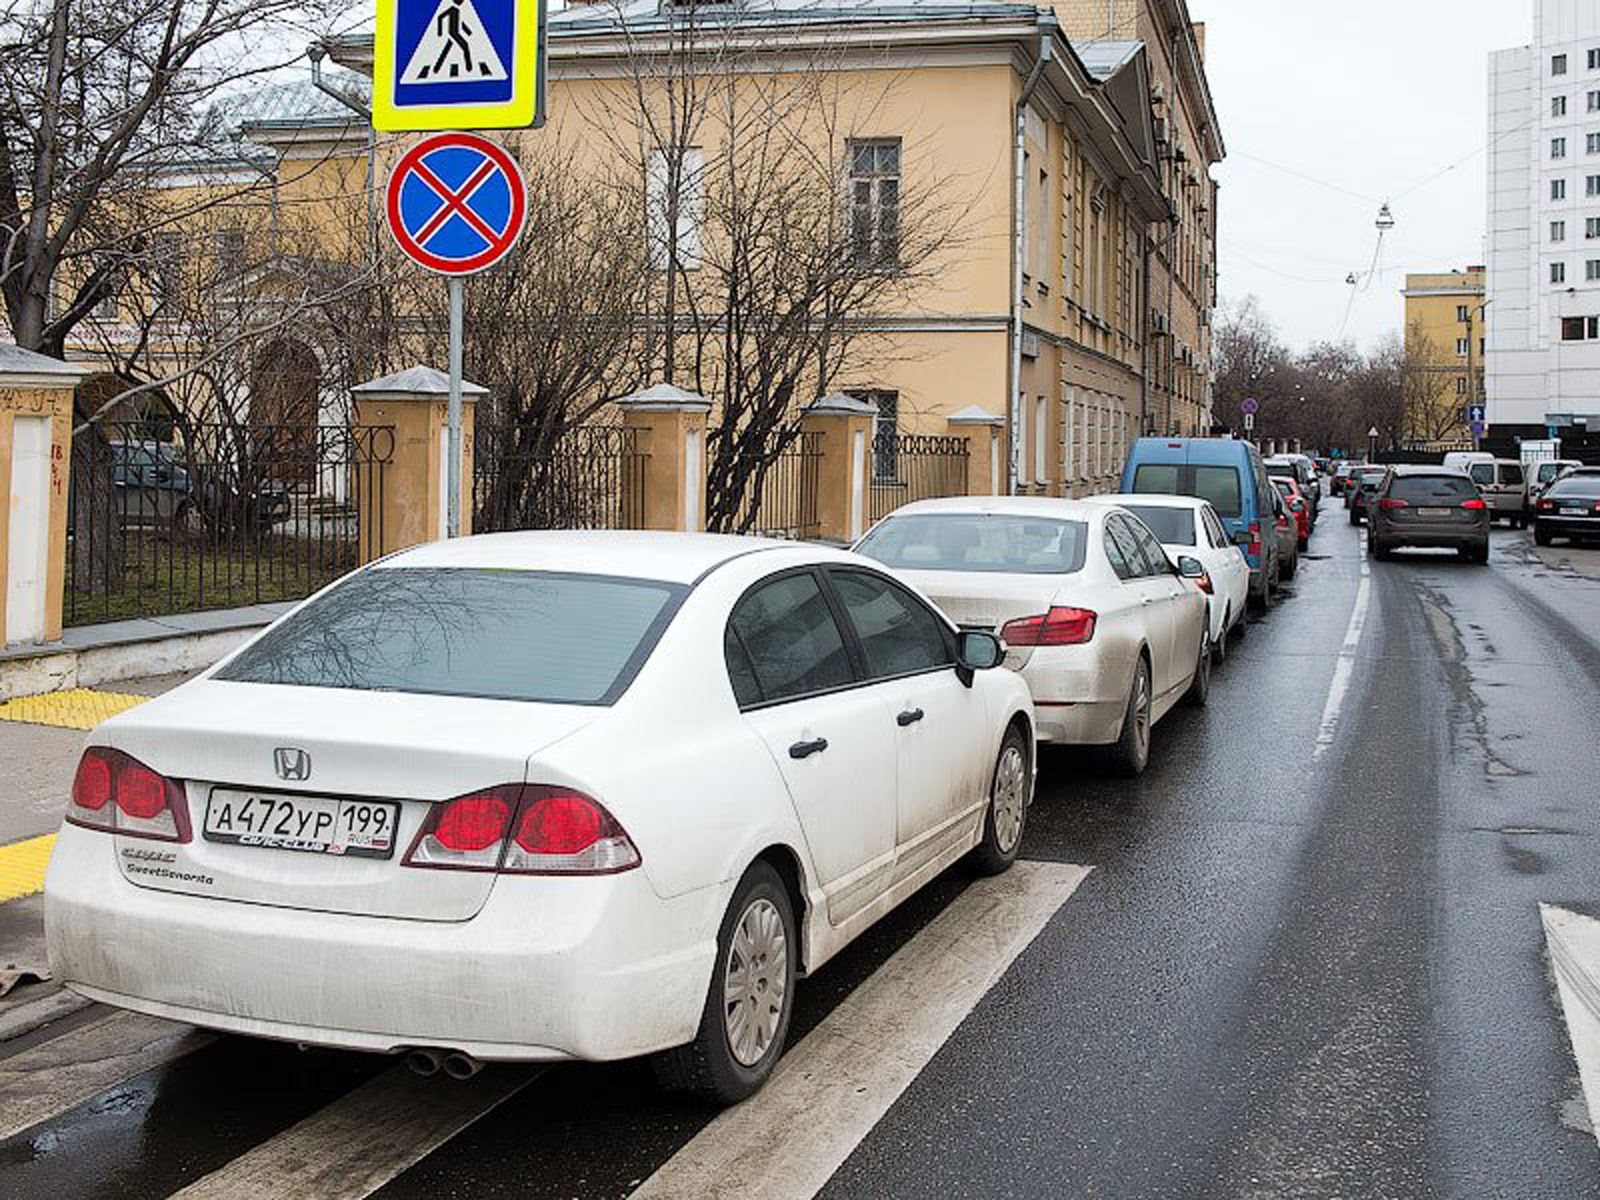 "بالصور" نظرة على السيارات الأكثر انتشارا في العاصمة الروسية موسكو 30